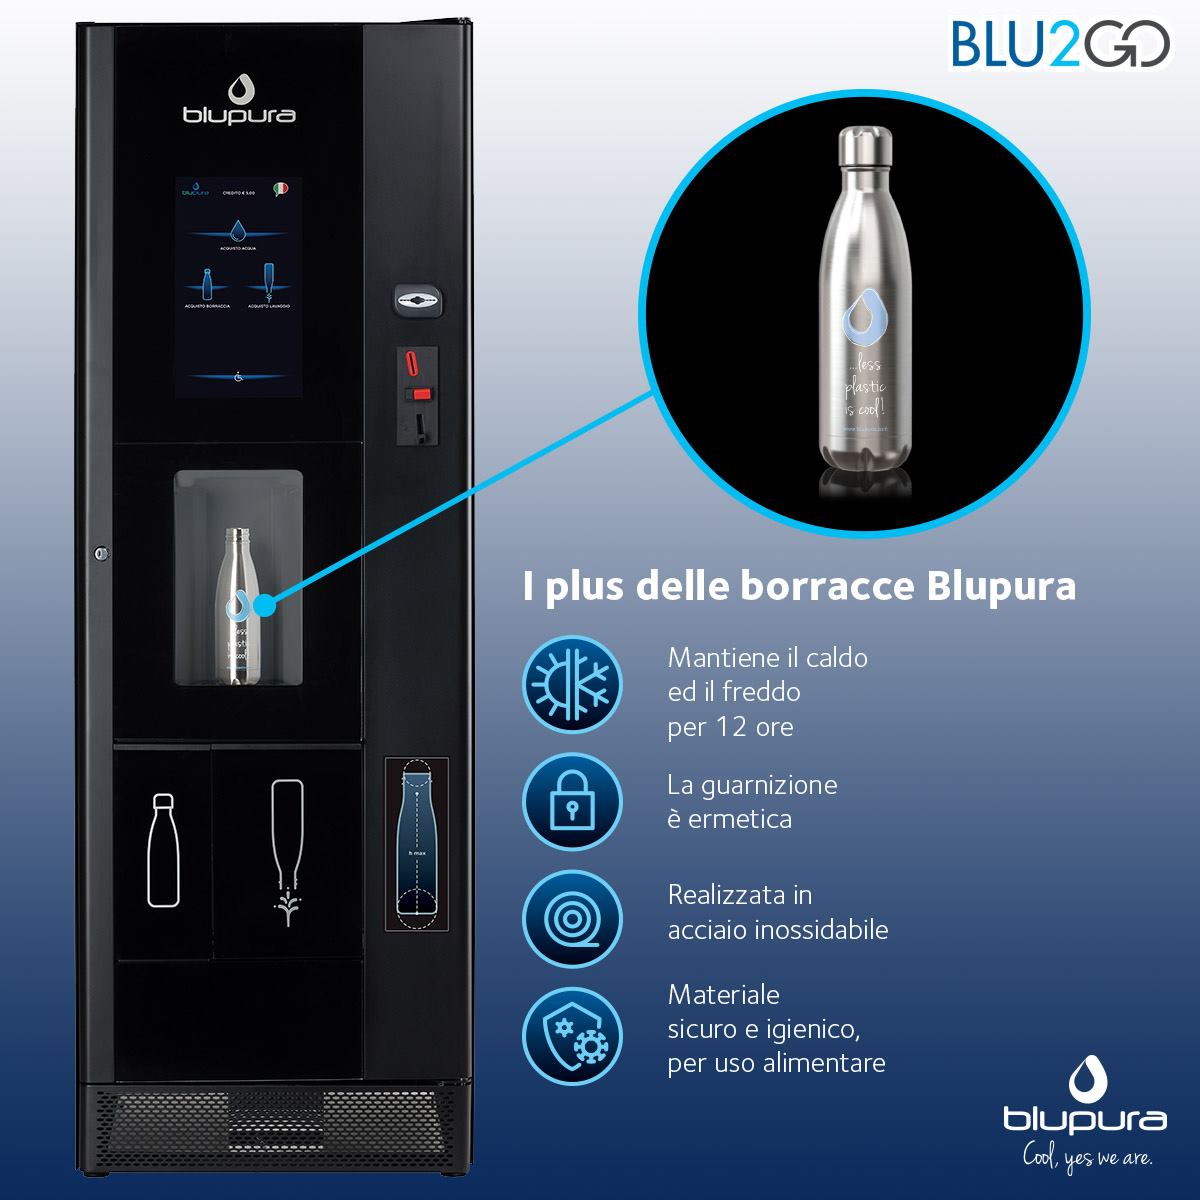 Blu2Go мир воды и вендинга соединились в новом торговом автомате